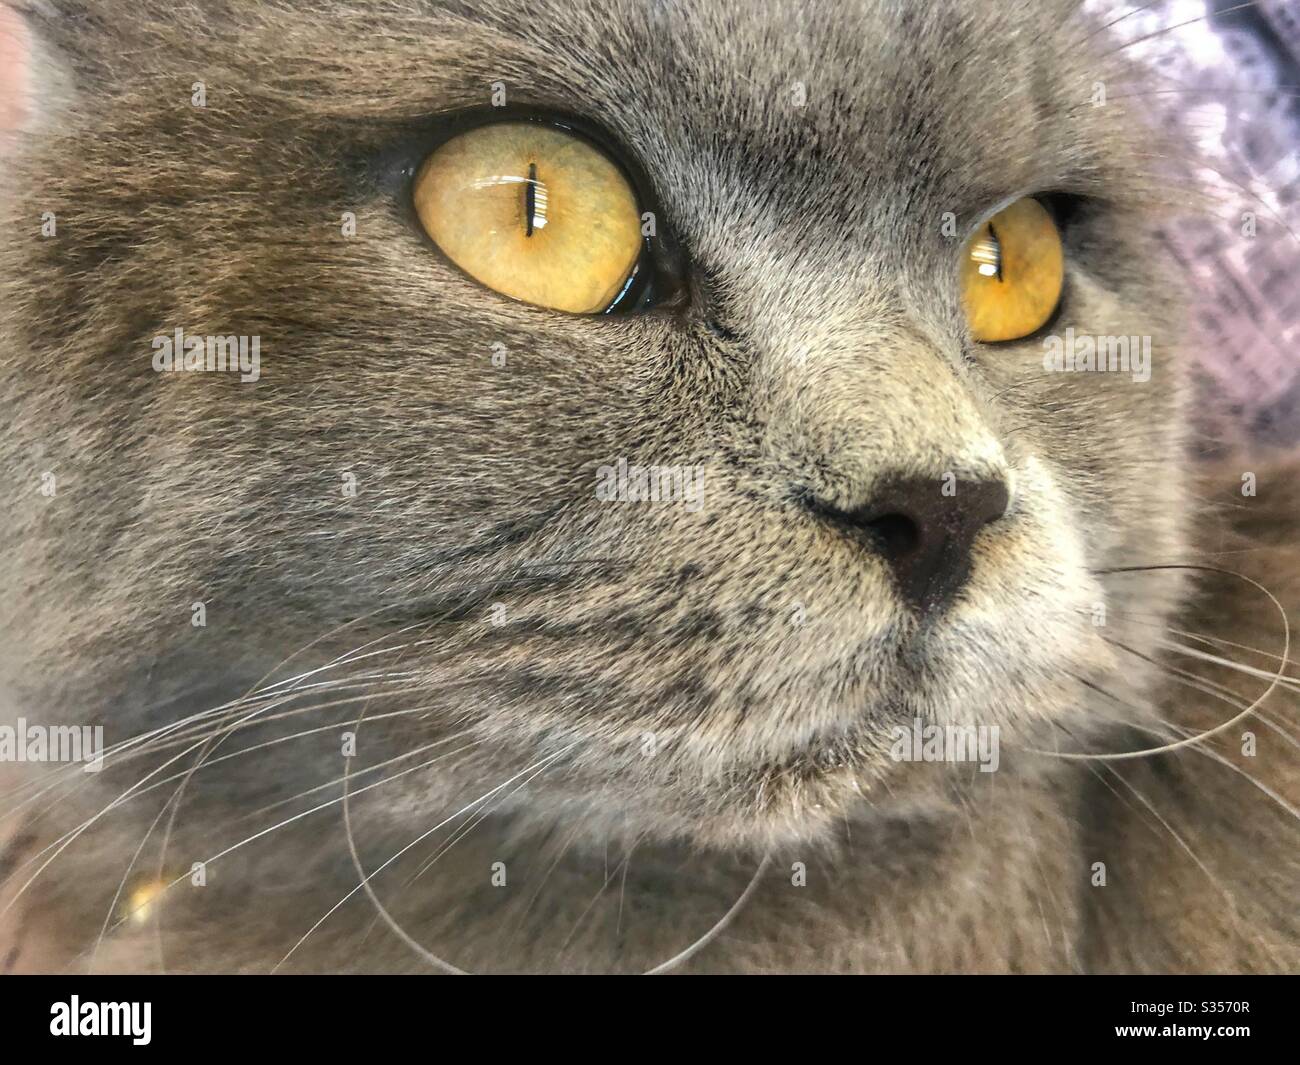 British cat with yellow eyes sharp look Stock Photo